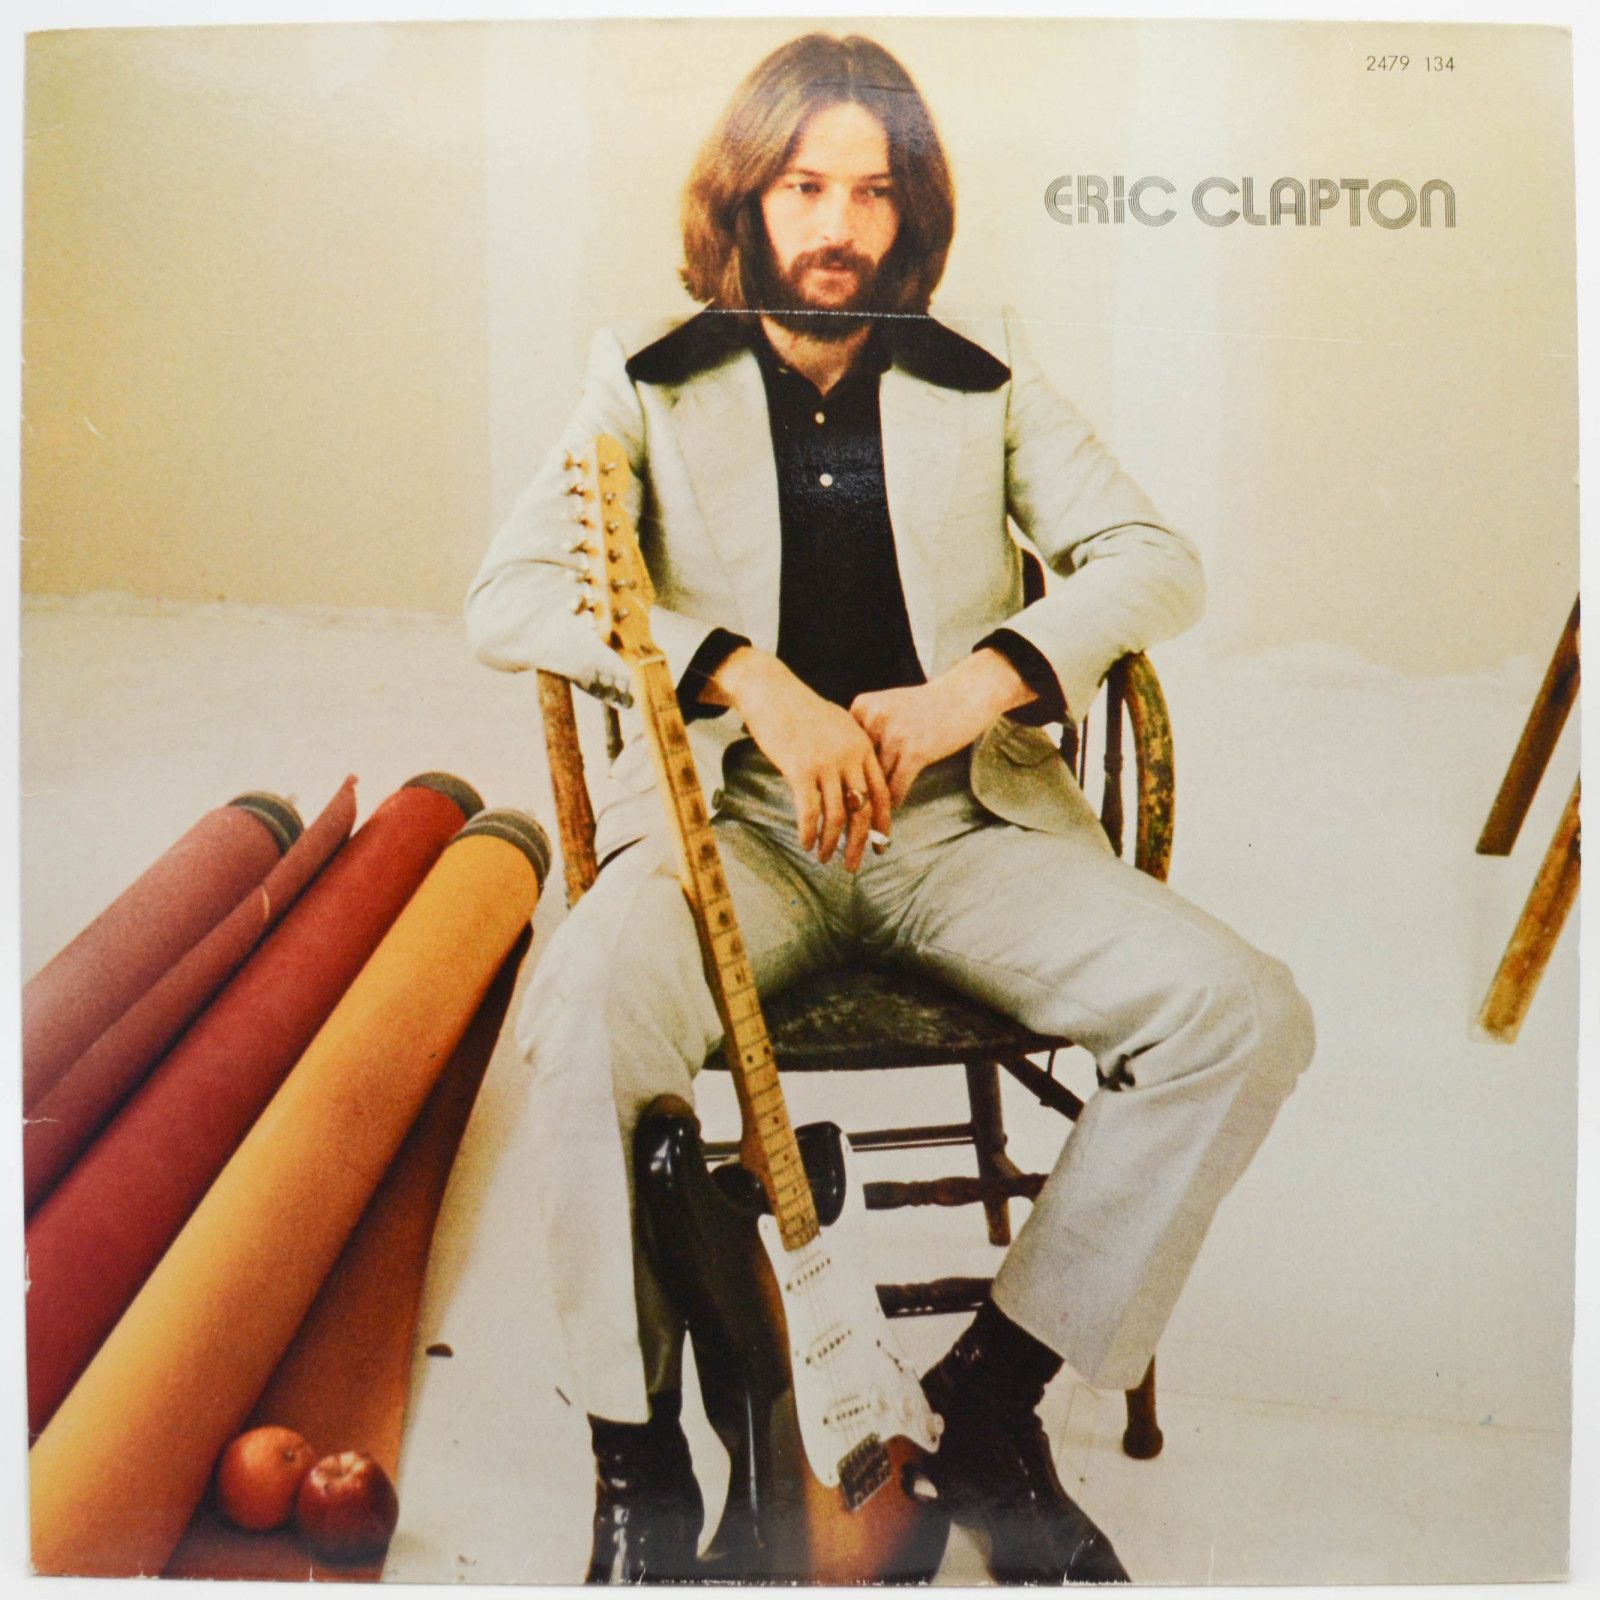 Eric Clapton — Eric Clapton, 1970